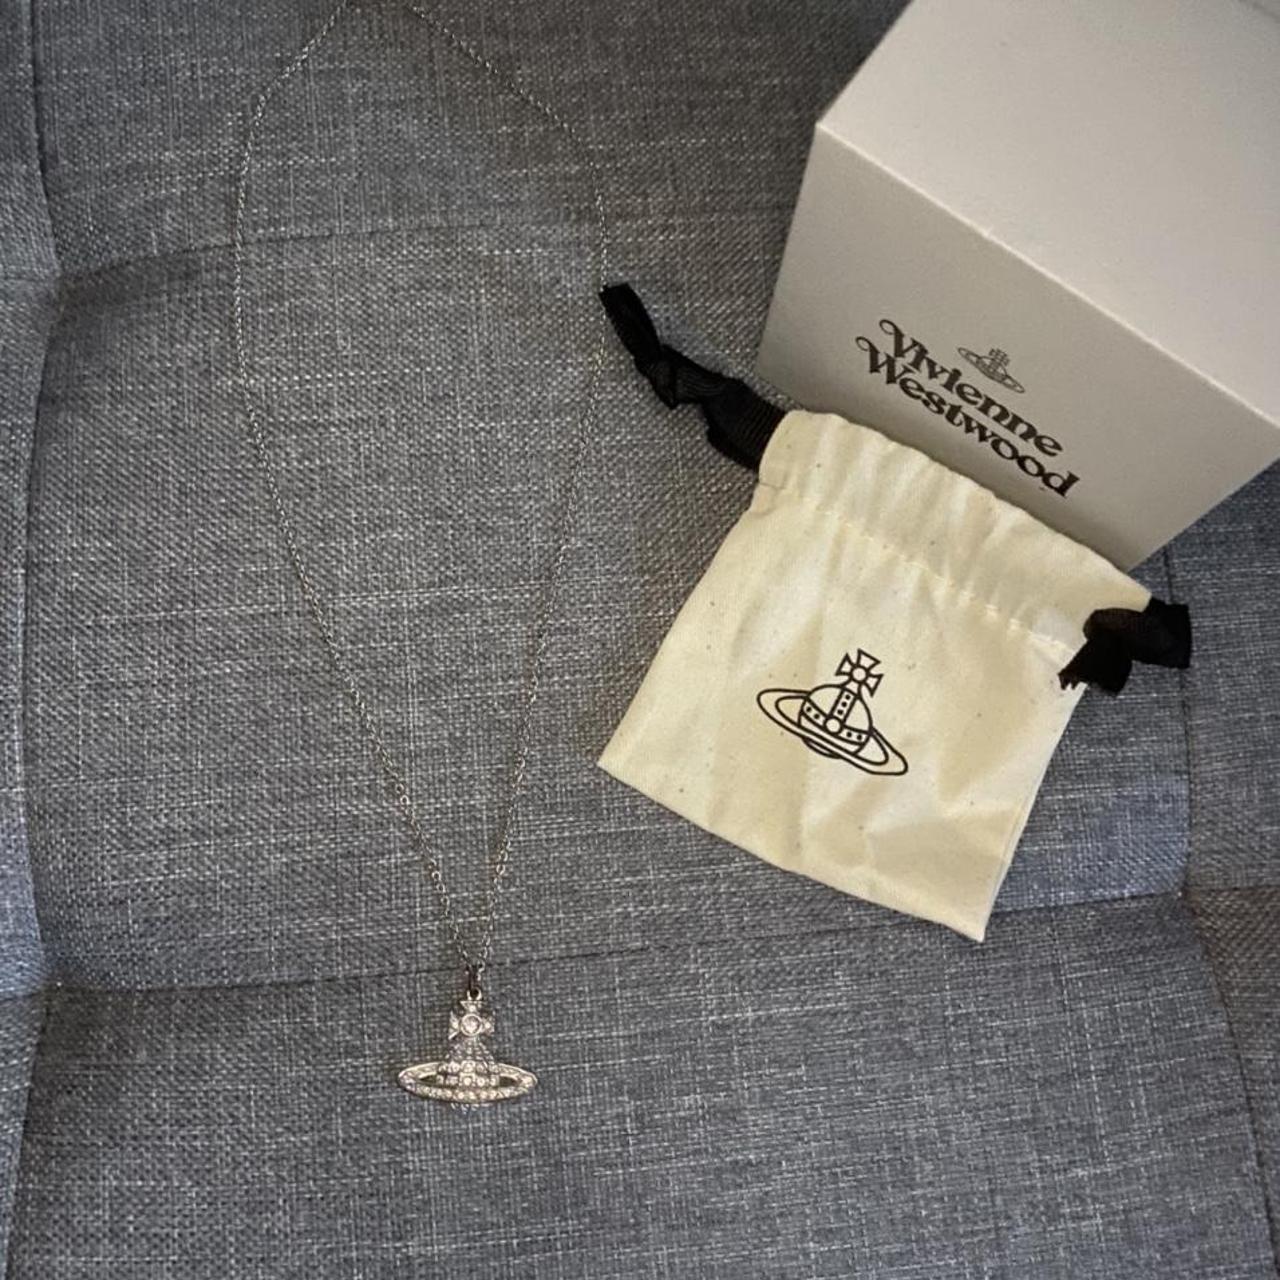 Genuine Vivienne Westwood orb necklace. bought for... - Depop